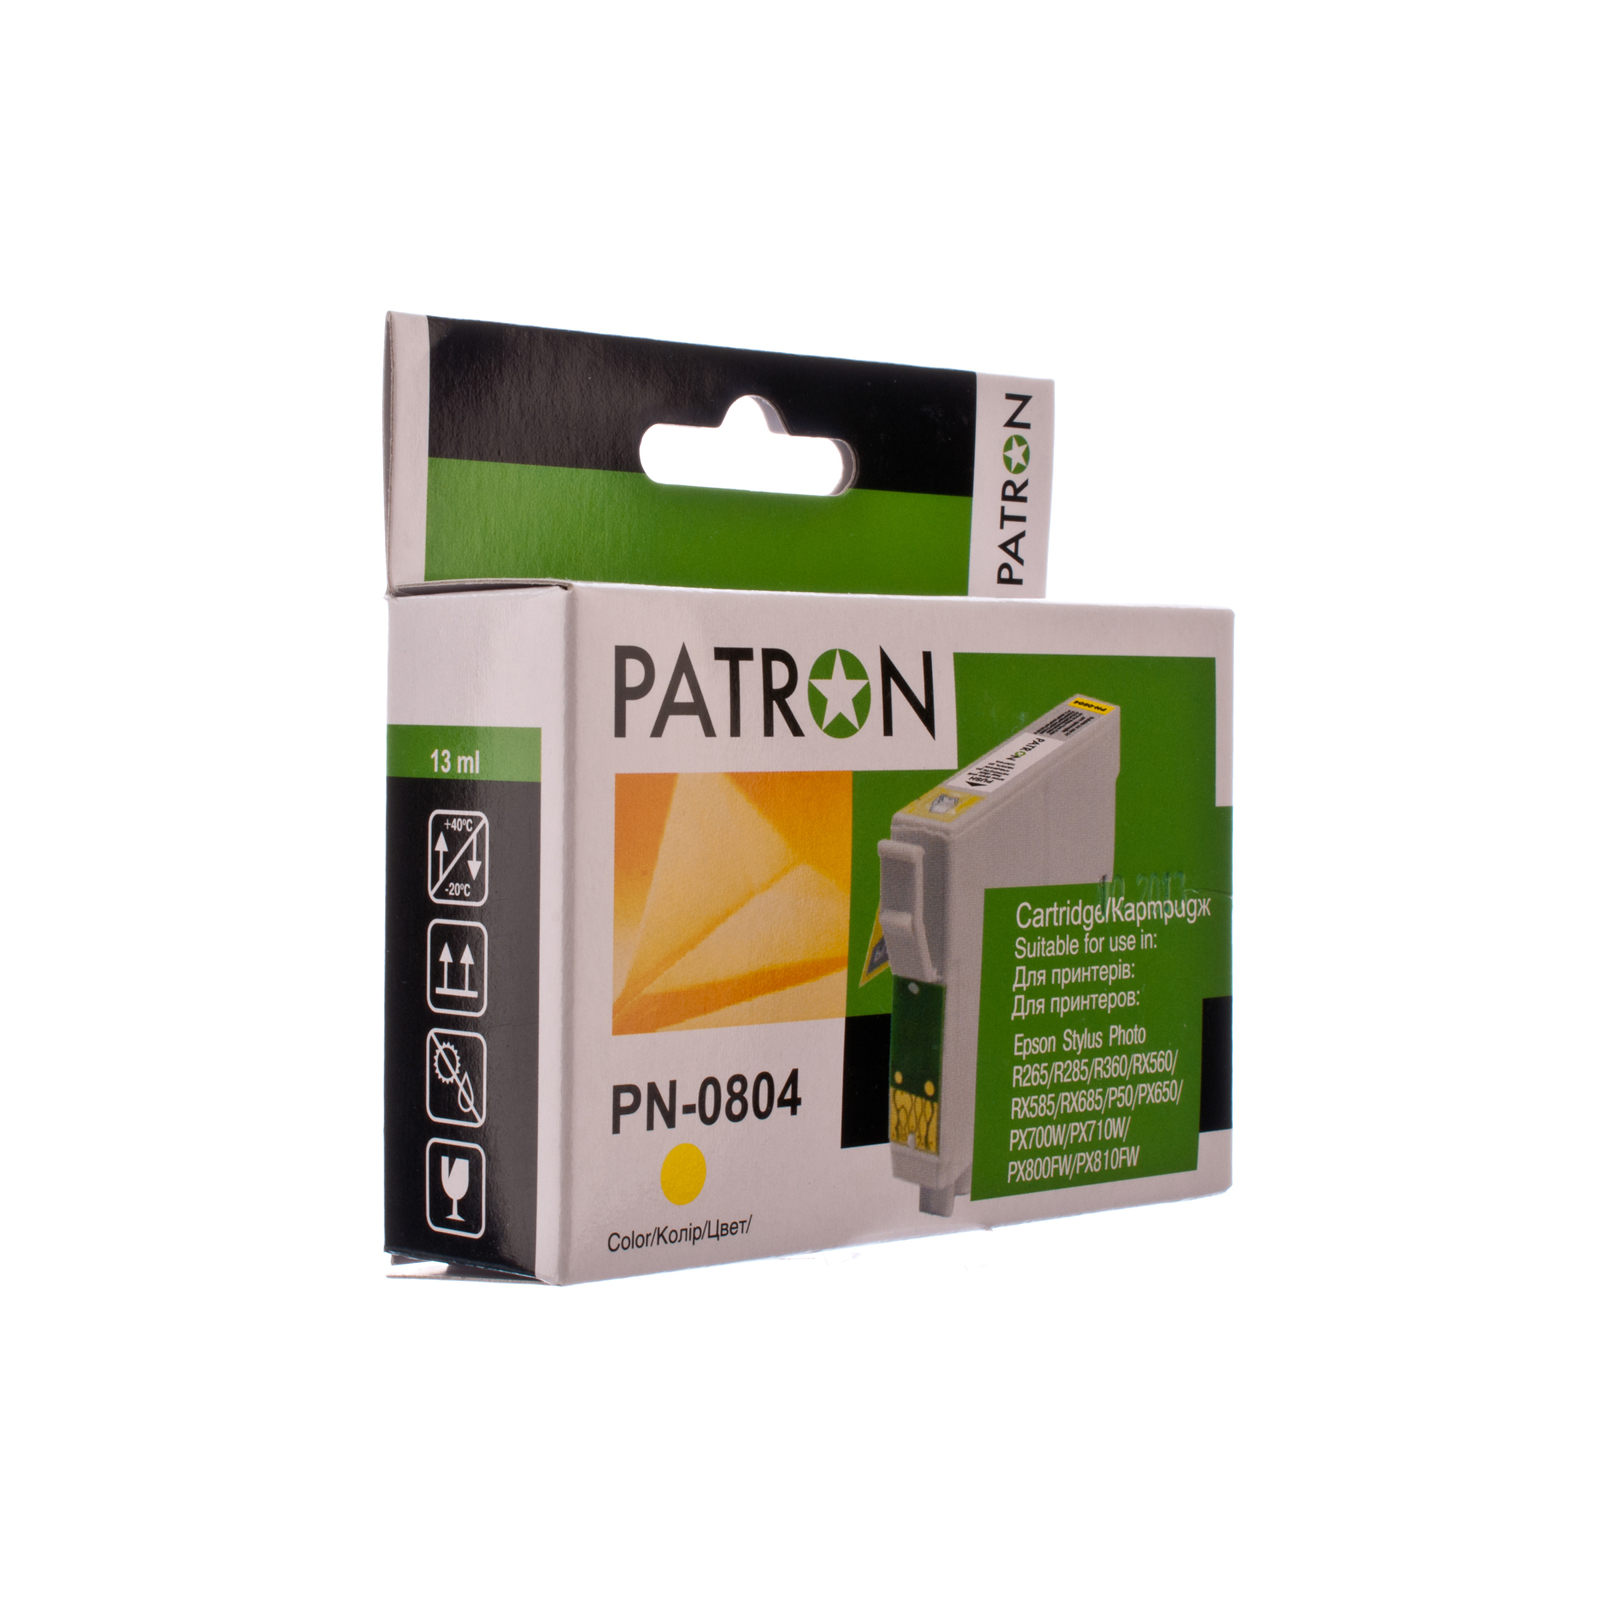 Картридж Patron EPSON R265/285/360,RX560/585/685,P50,PX650 YELLOW (T0804) (PN-0804)